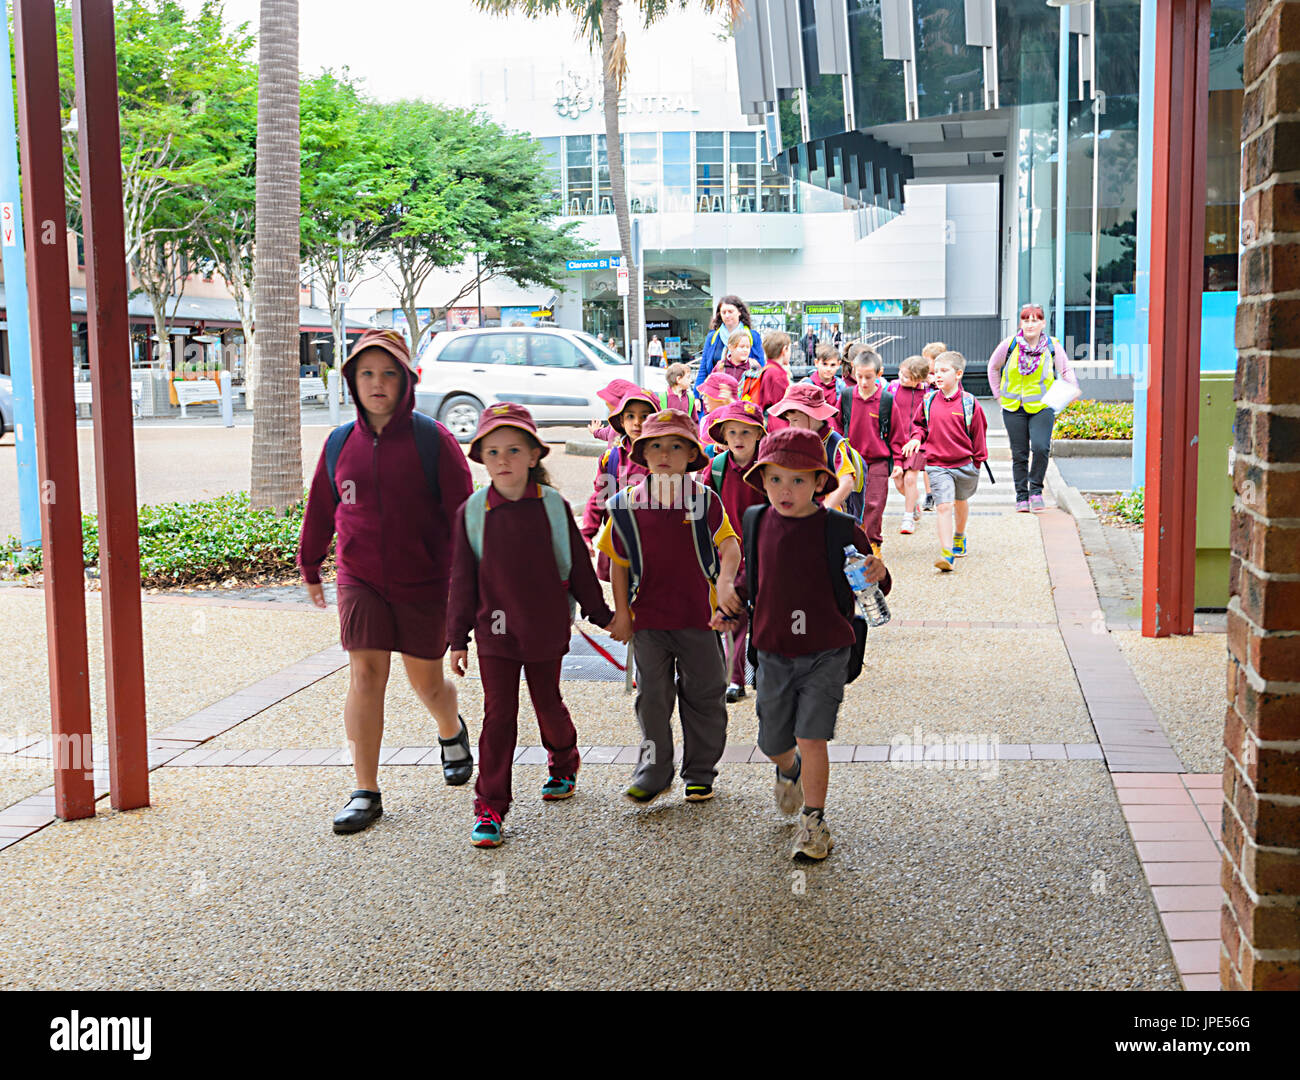 Gli scolari indossano le uniformi scolastiche a piedi in strada in un giorno di scuola scampagnate, Port Macquarie, Nuovo Galles del Sud, NSW, Australia Foto Stock